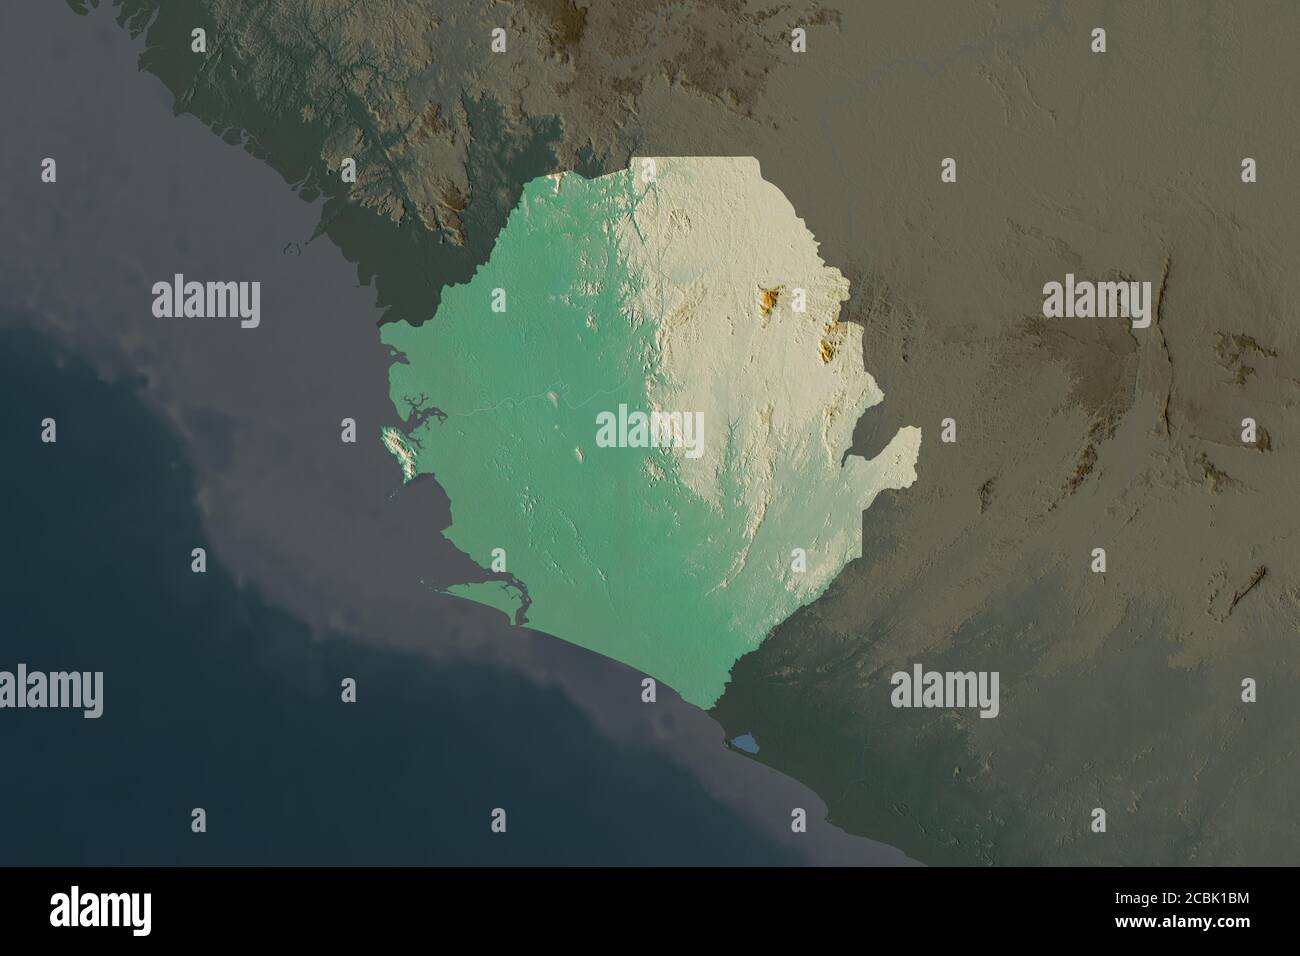 Forma De Sierra Leona Separada Por La Desaturación De Las Zonas Vecinas Mapa Topográfico De 8977